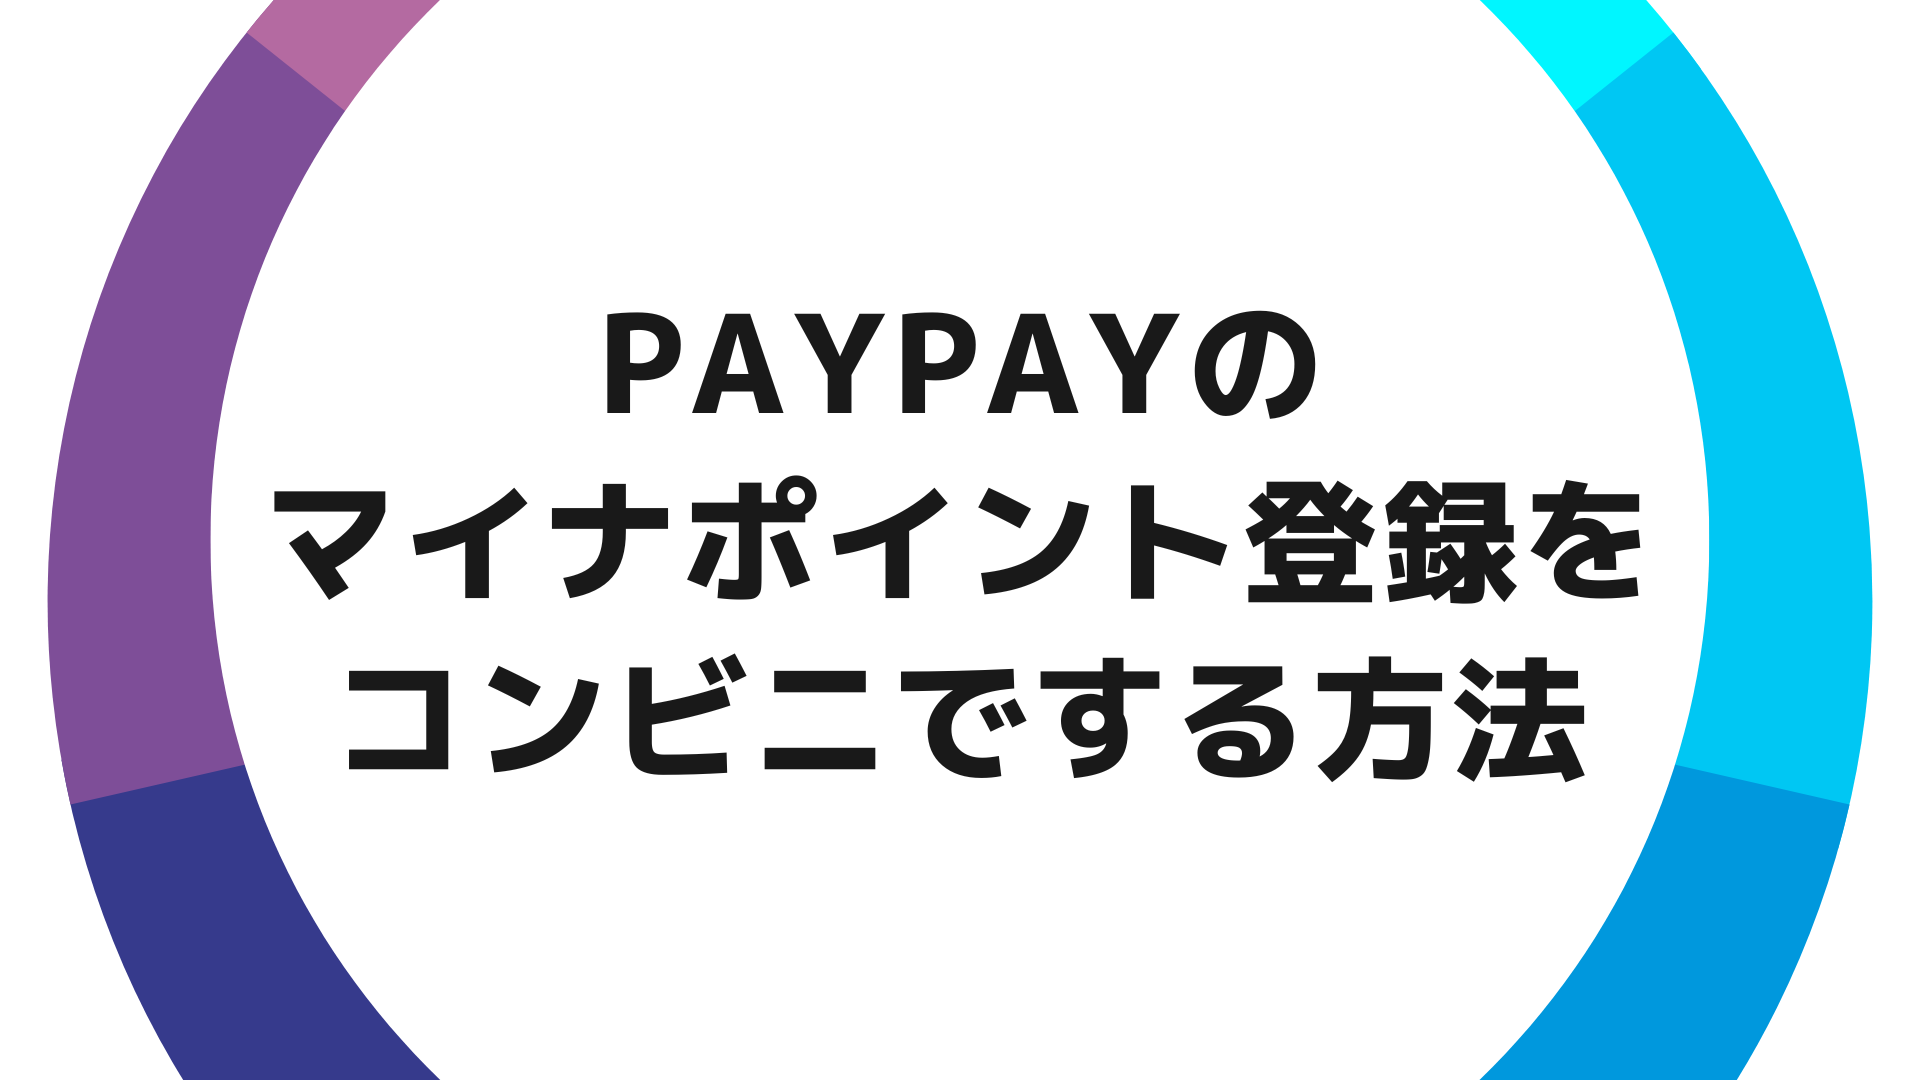 PayPay（ペイペイ）のマイナポイント登録をコンビニでする方法【セブンイレブンのマルチコピー機からの申し込みを解説します】